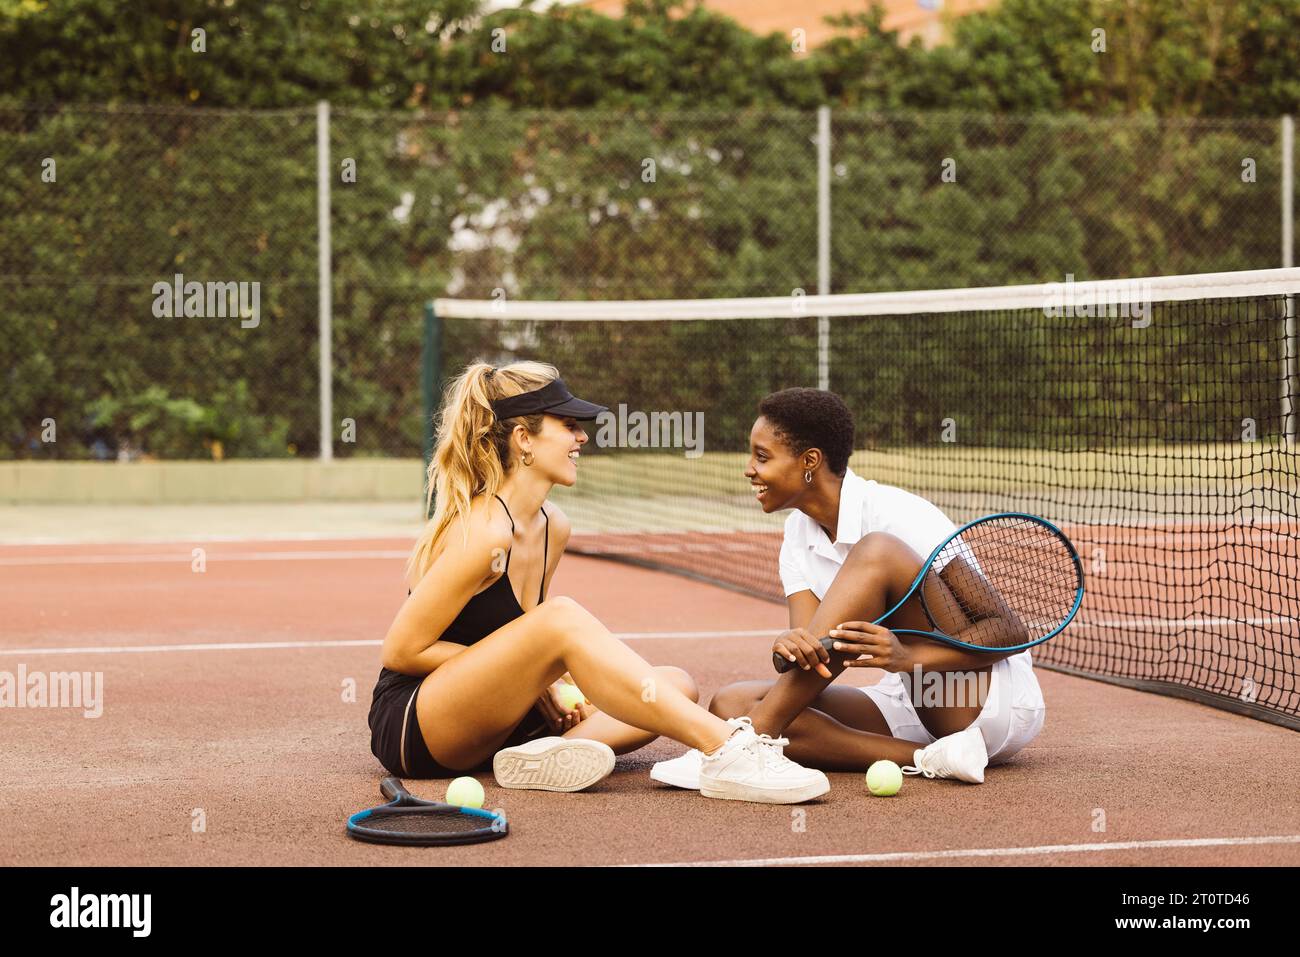 Deux jeunes belles femmes ayant une conversation assise sur un court de tennis à côté du filet. Deux joueurs de tennis amateurs faisant une pause pendant un tennis Banque D'Images